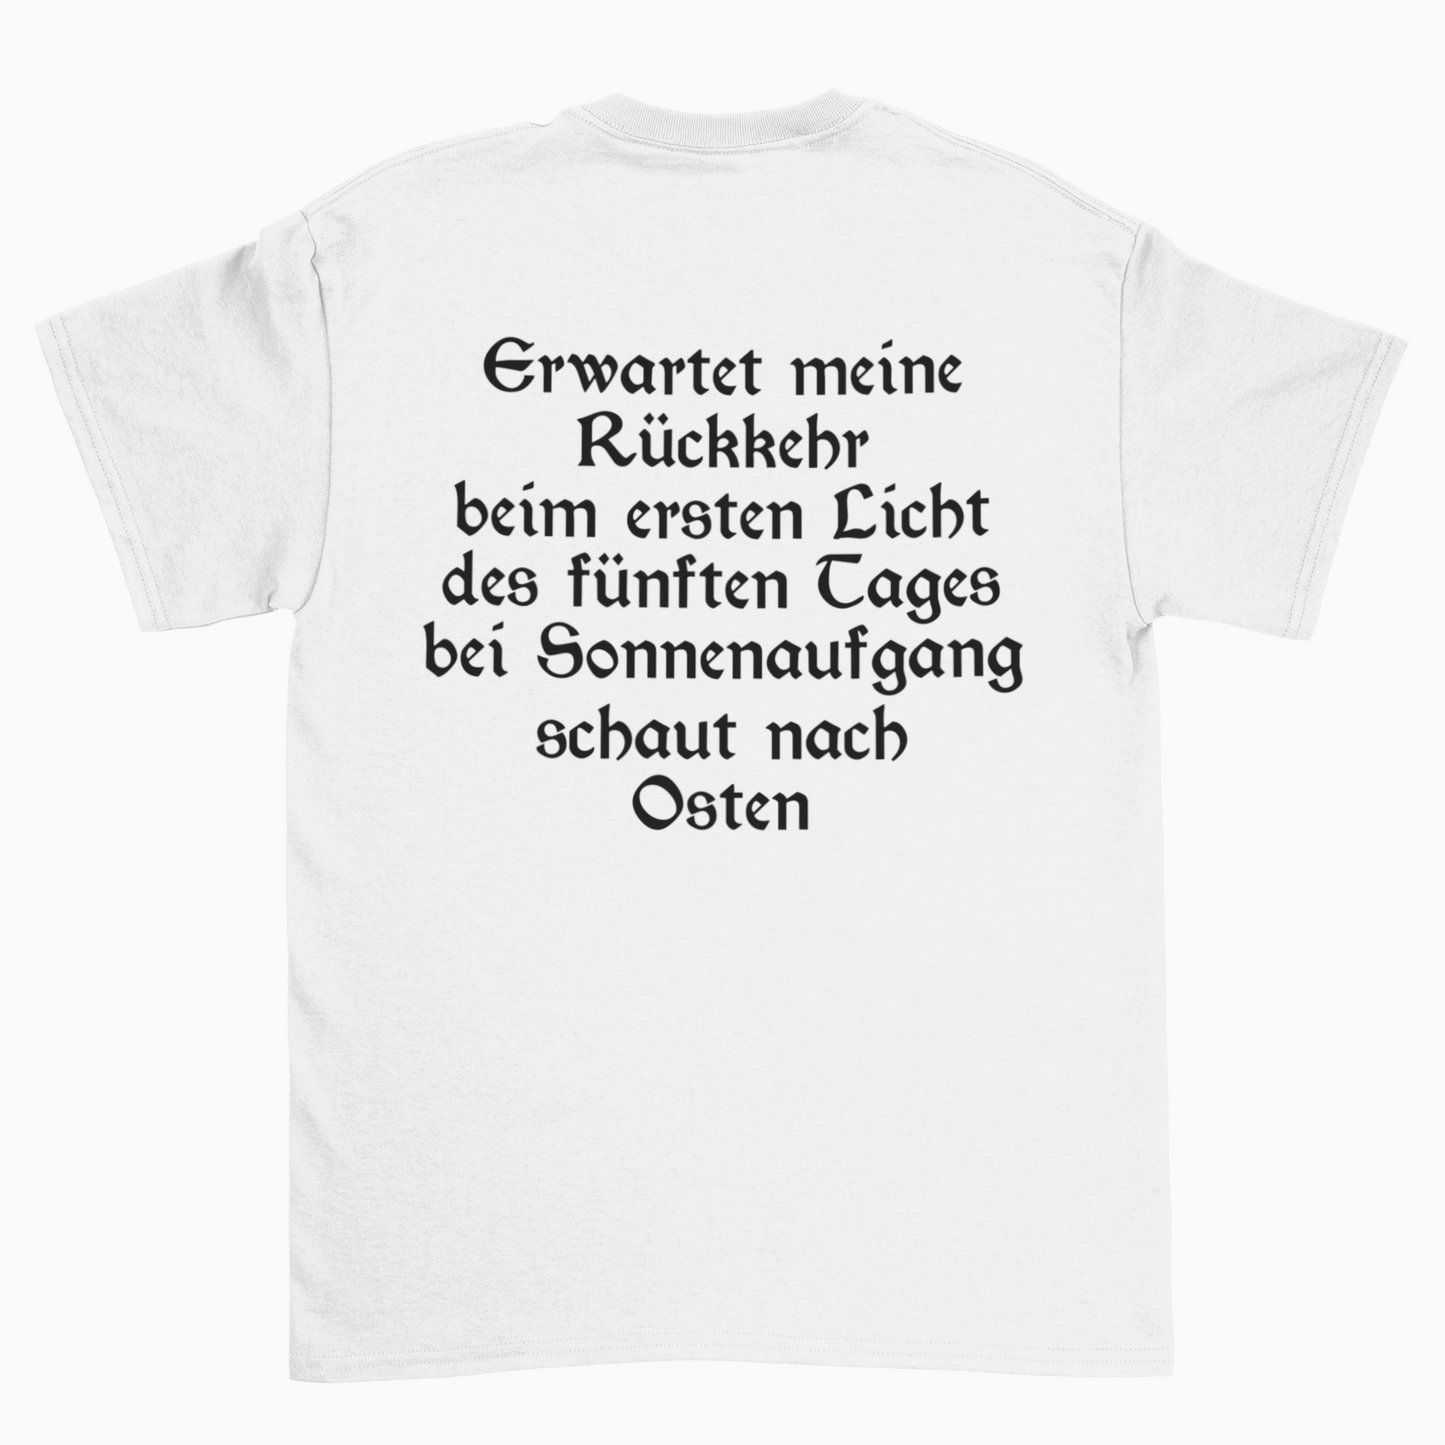 Werkstatt fahren (Front+Backprint)  - Unisex Shirt